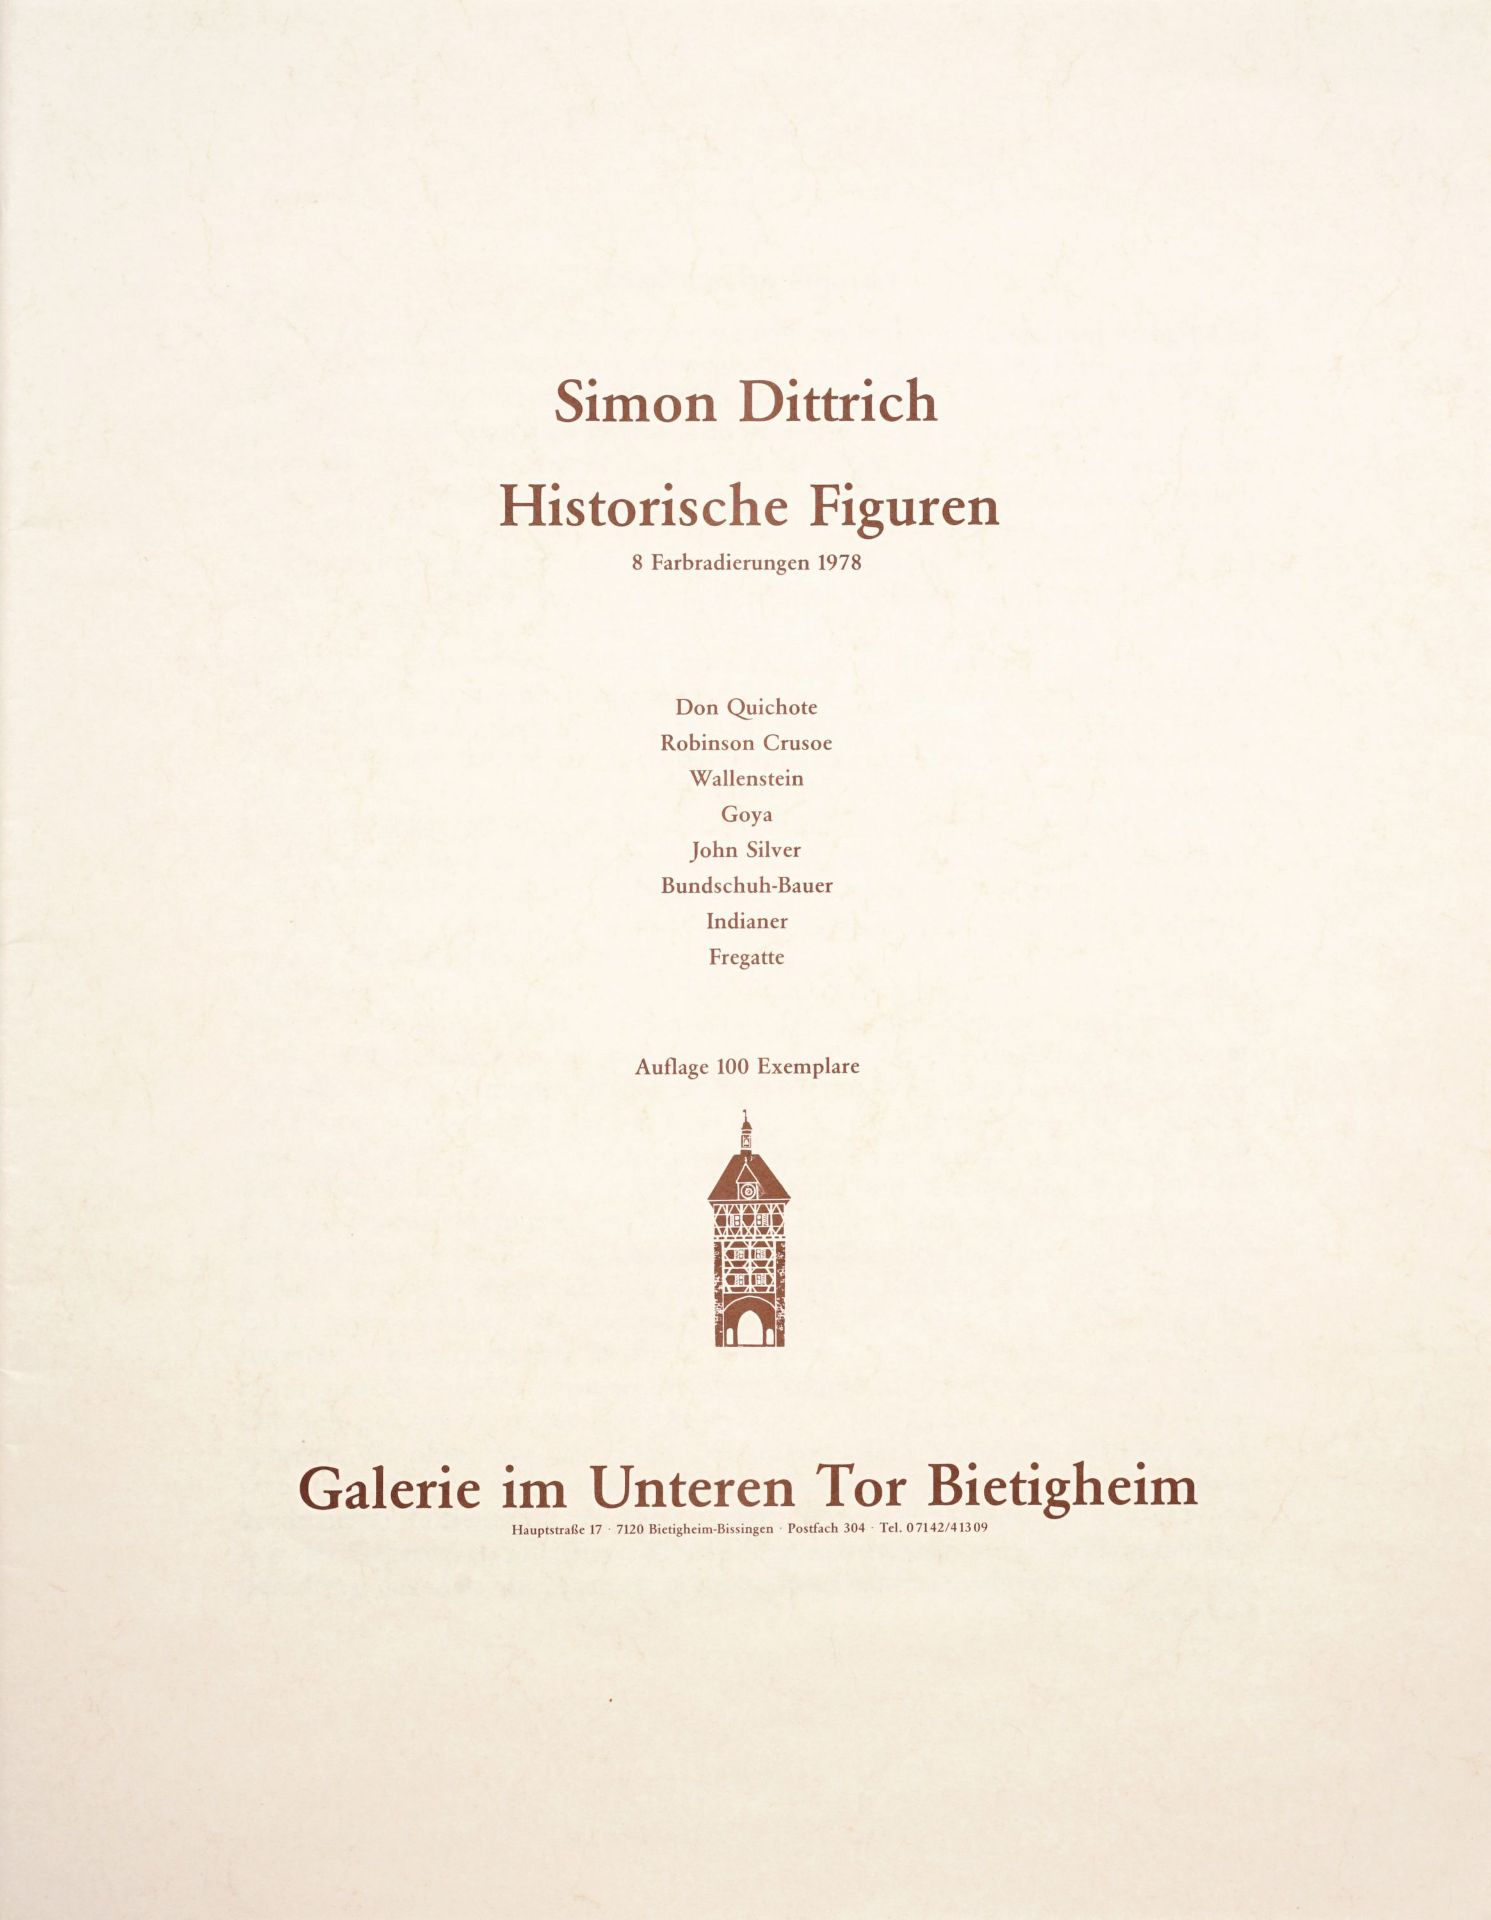 Simon Dittrich "Historische Figuren". 1978.